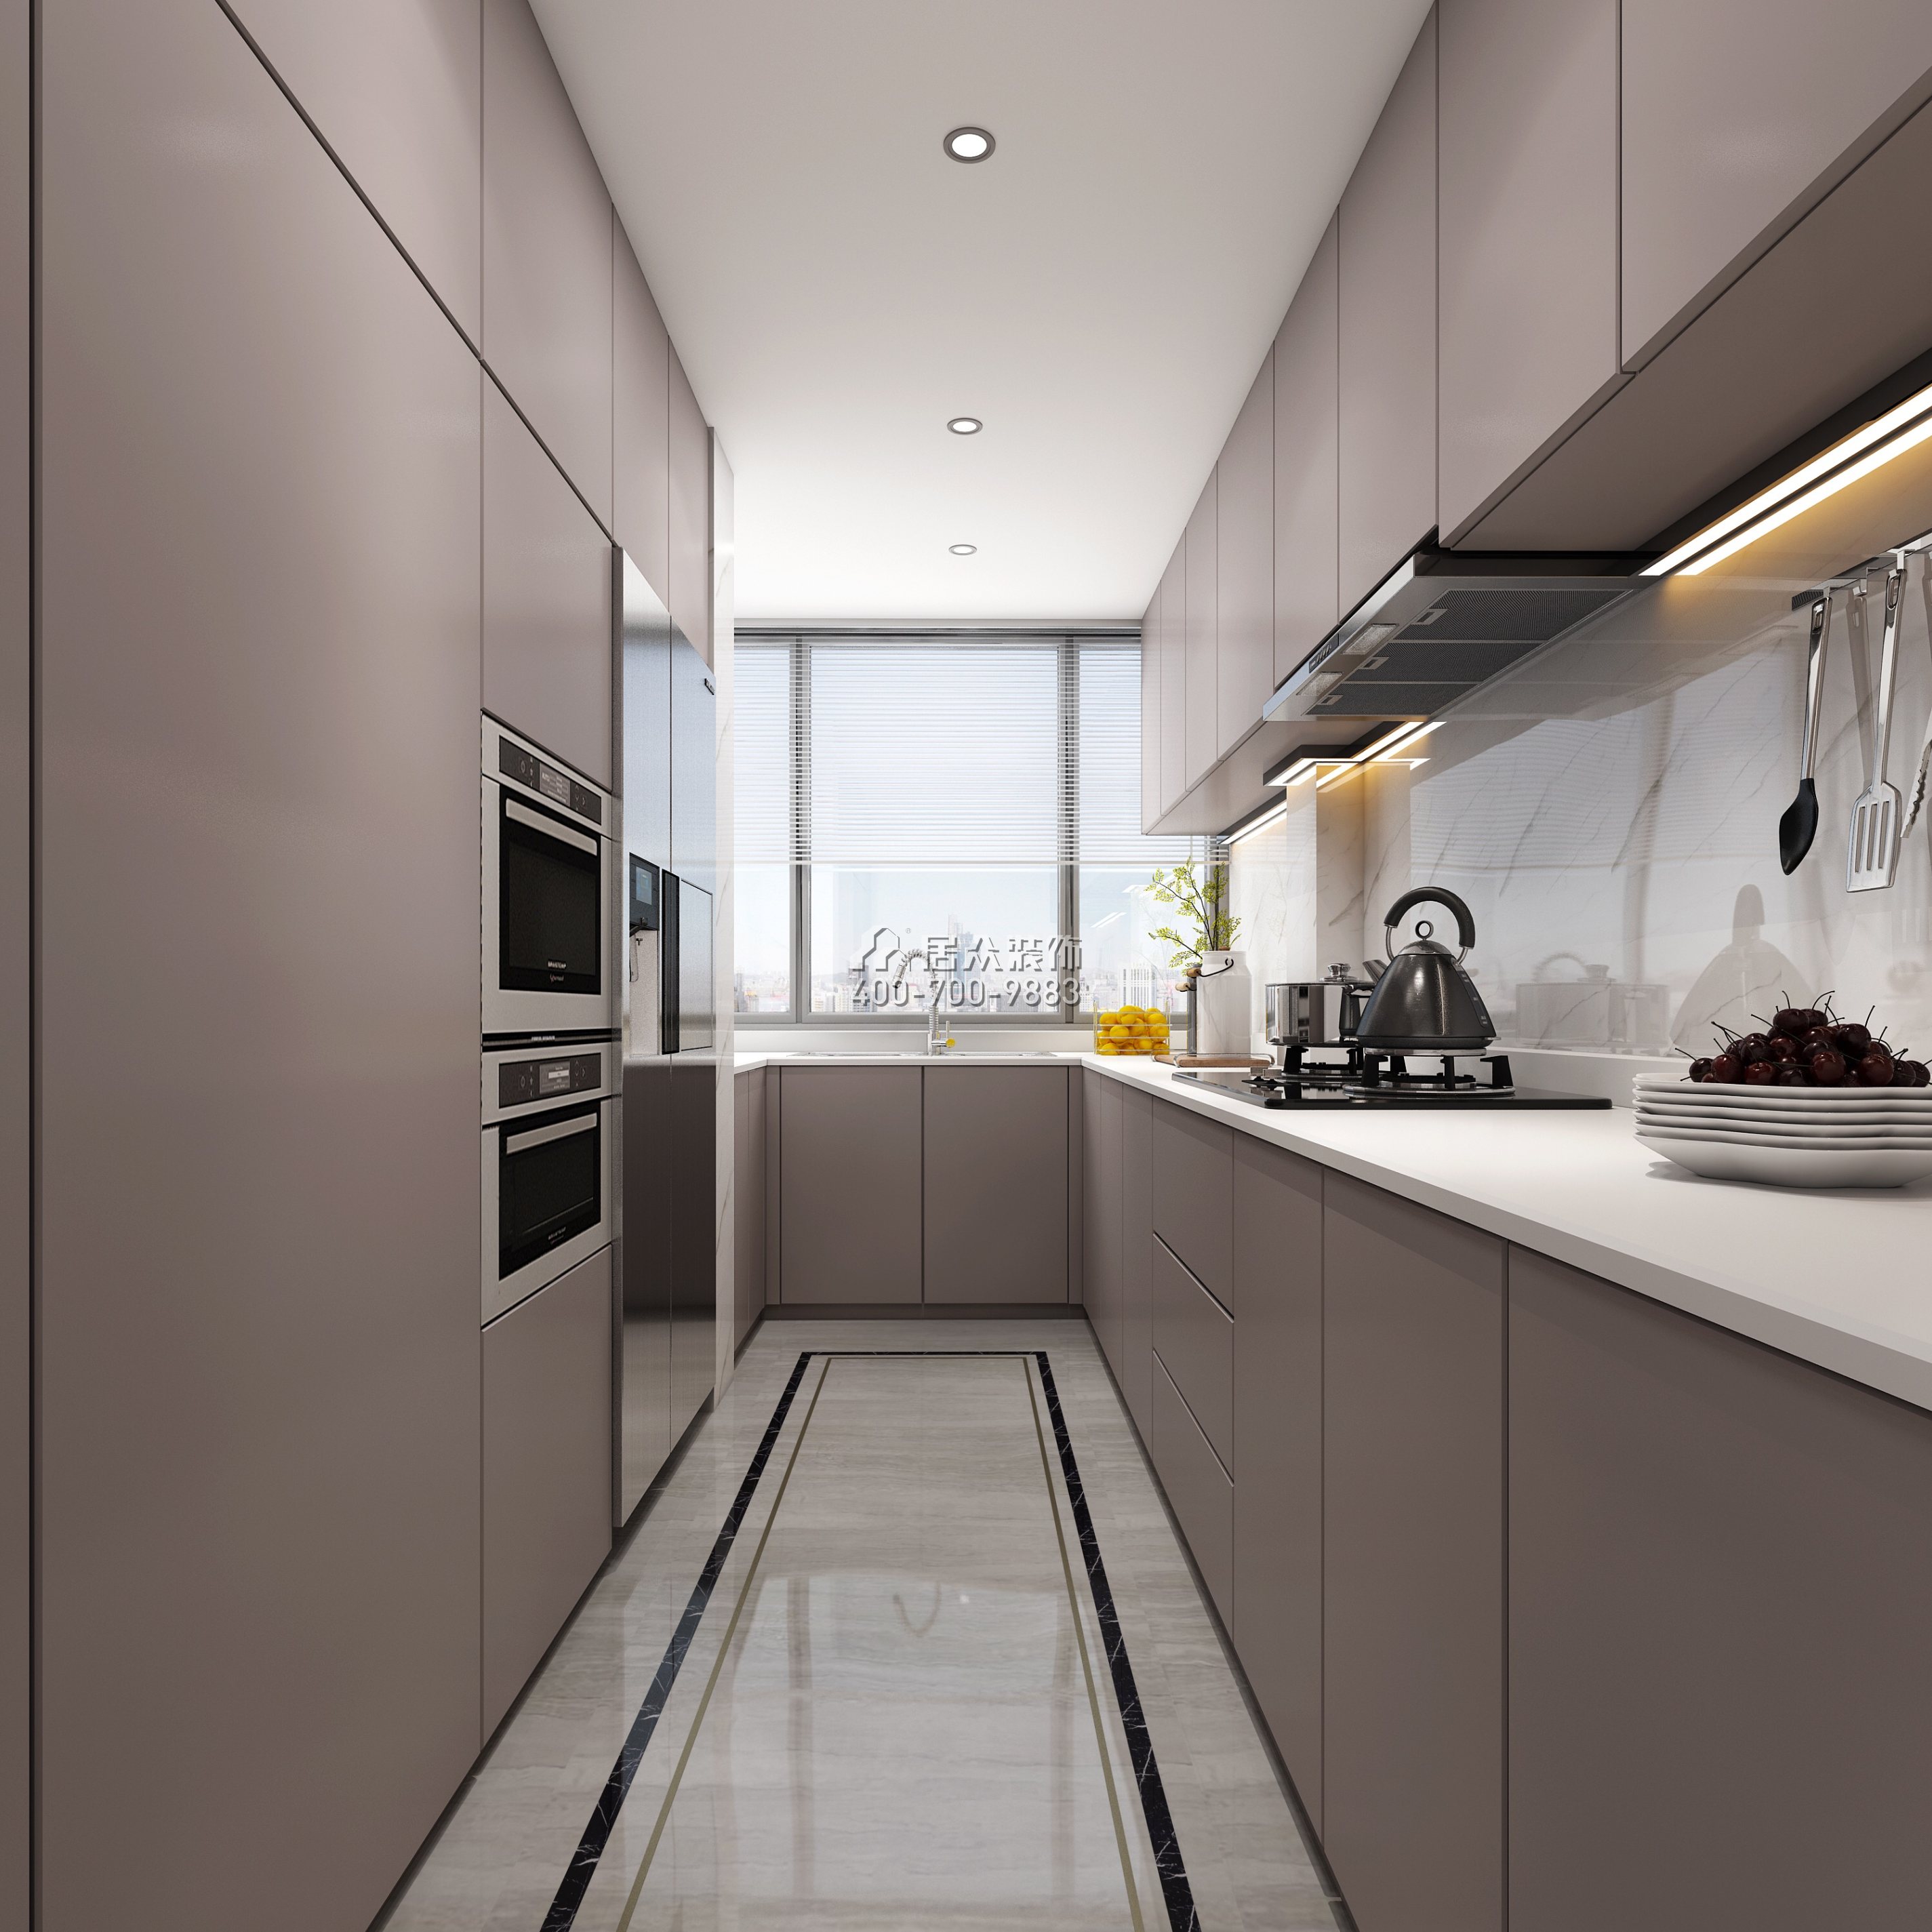 联投东方华府二期150平方米现代简约风格平层户型厨房装修效果图